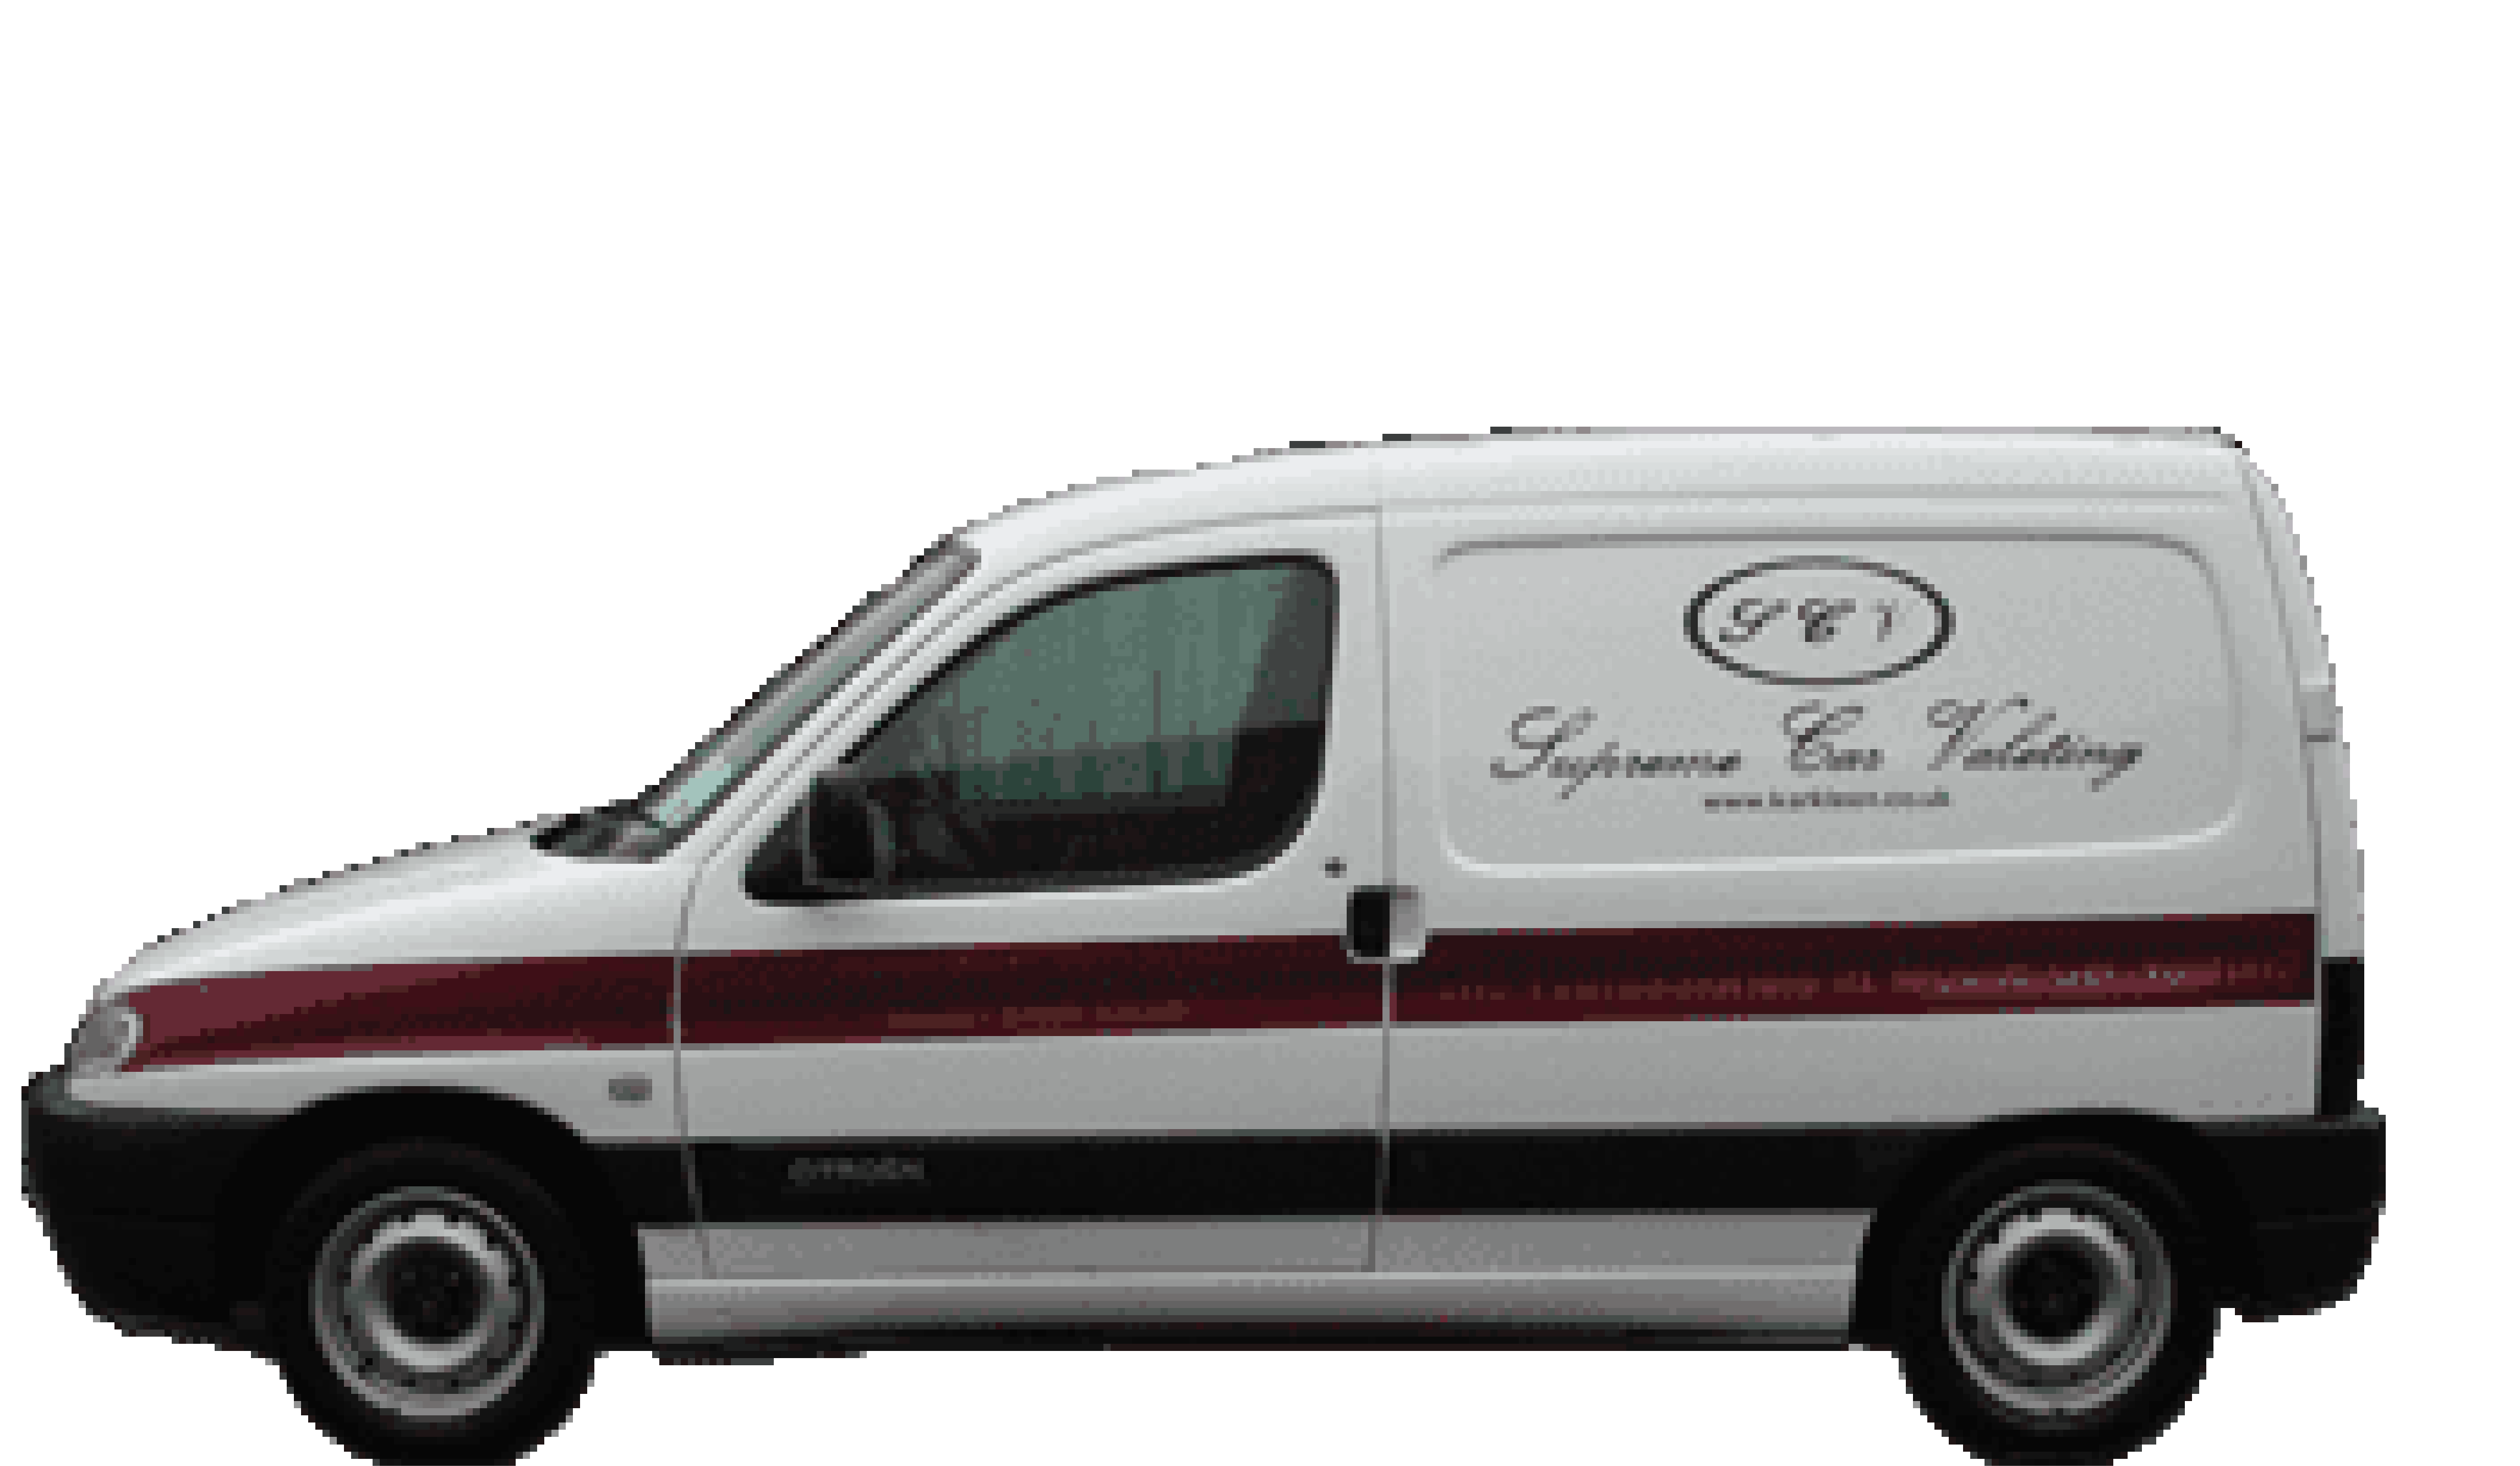 Karkleen – mobile valeting in St Albans